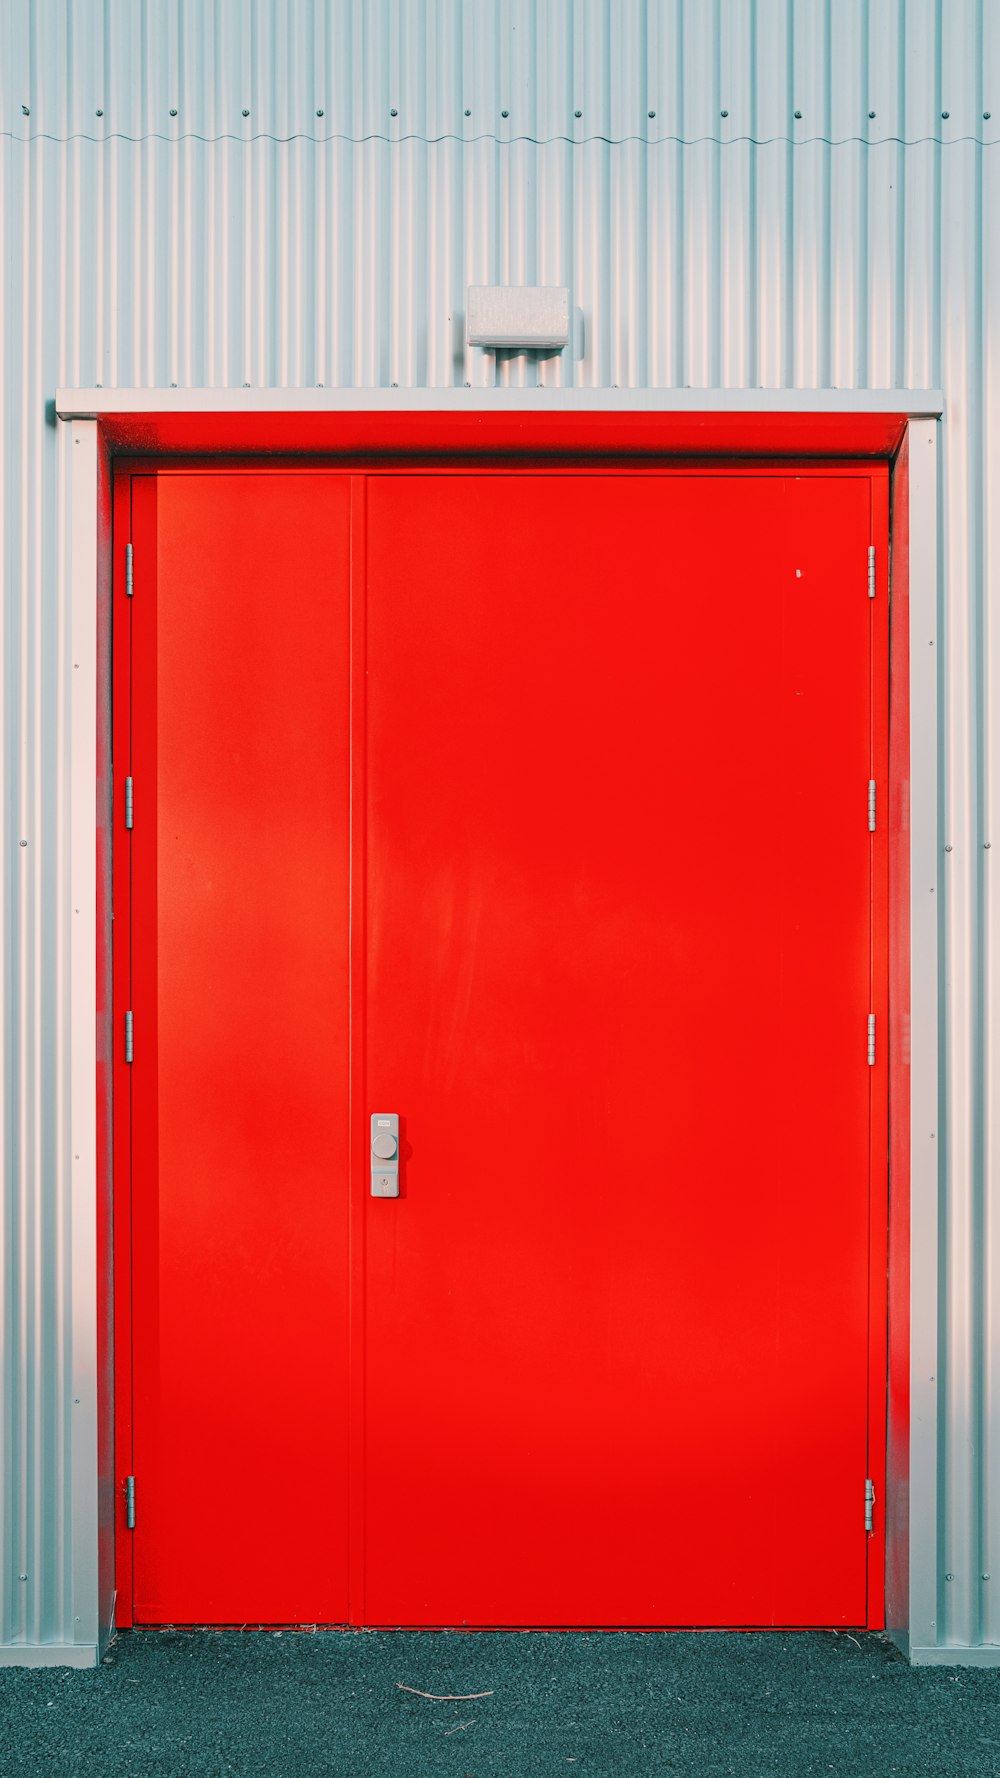 상단에 흰색 상자가있는 빨간색 문